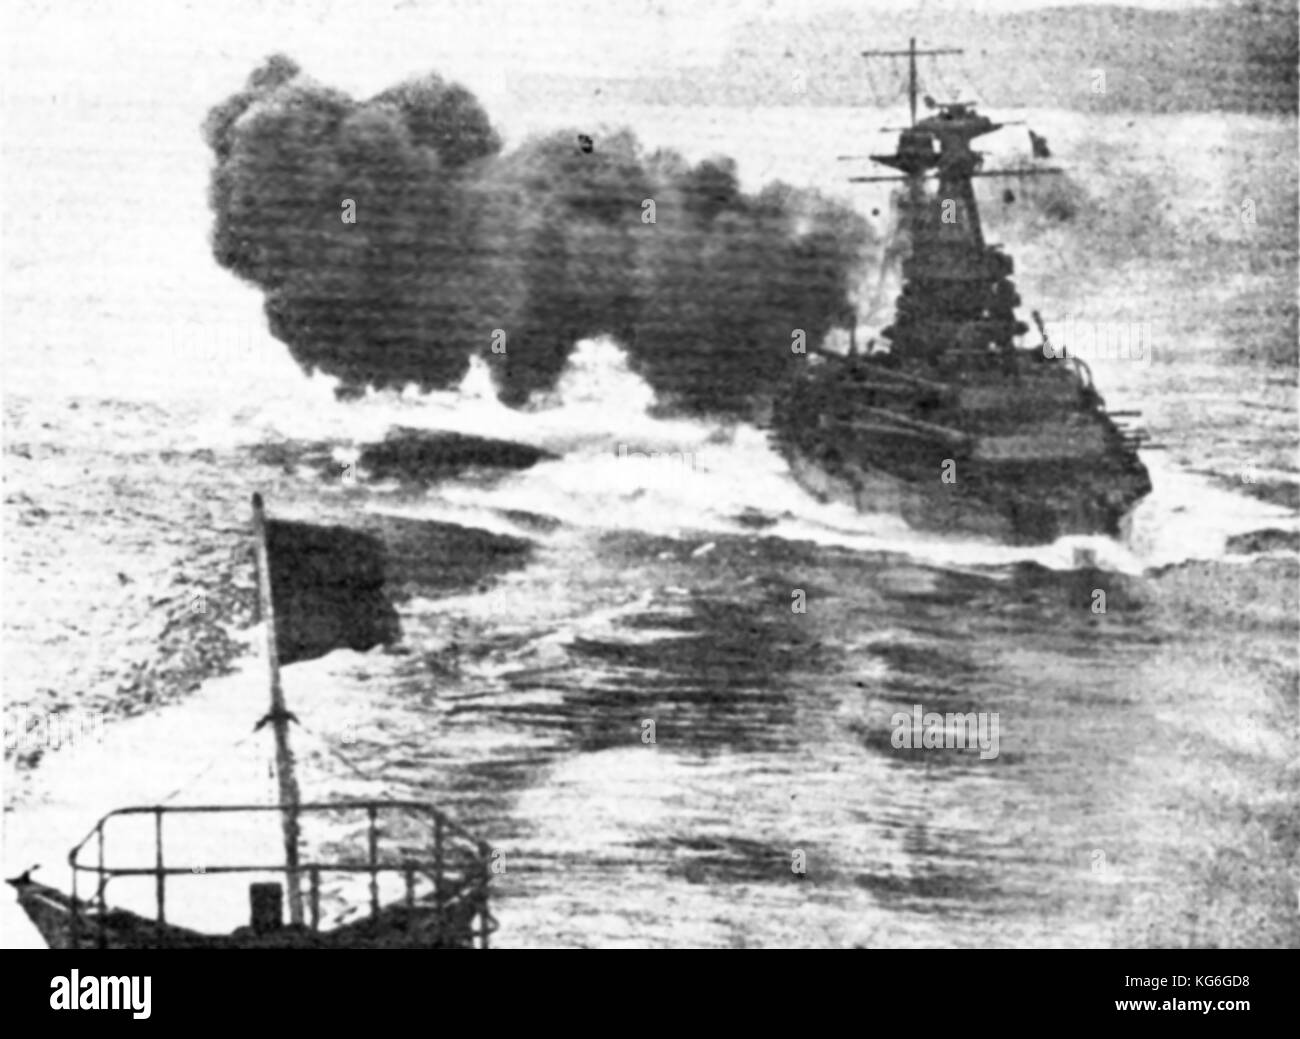 1916 Das britische Kriegsschiff "Royal Sovereign" (Gestartet 1915) feuern eine Salve von 15 cm Geschütze. (Rache Klasse) - (R-Klasse) Stockfoto